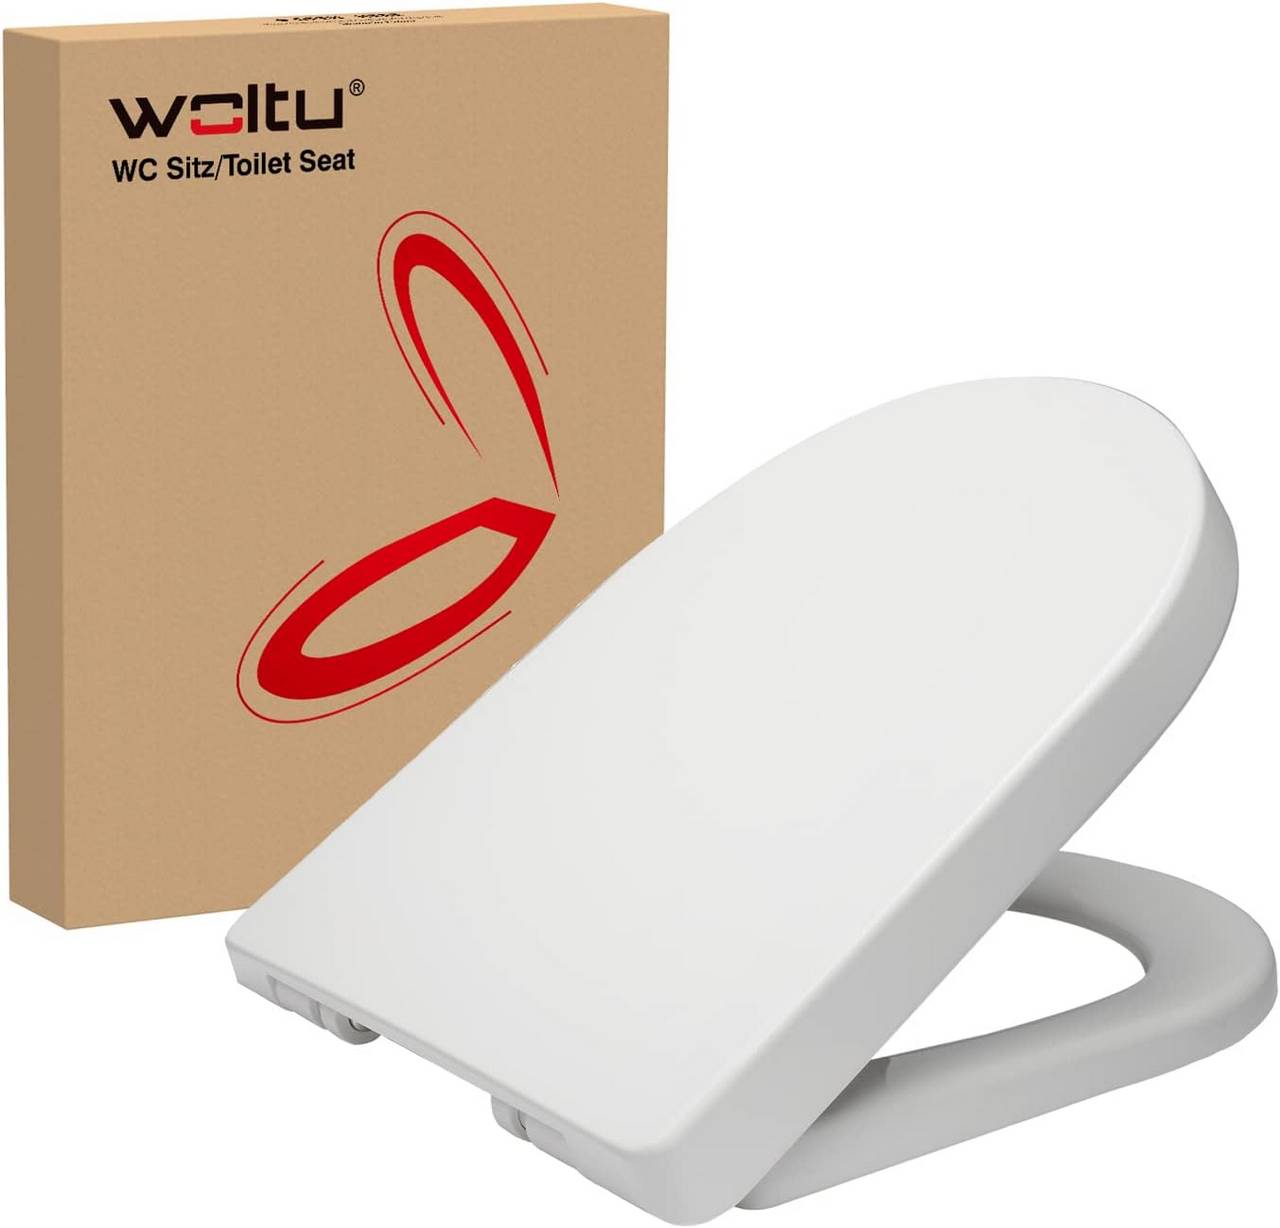 Abattant WC Blanc Uni 45,5 x 36 cm Confort en Plastique + Fixation